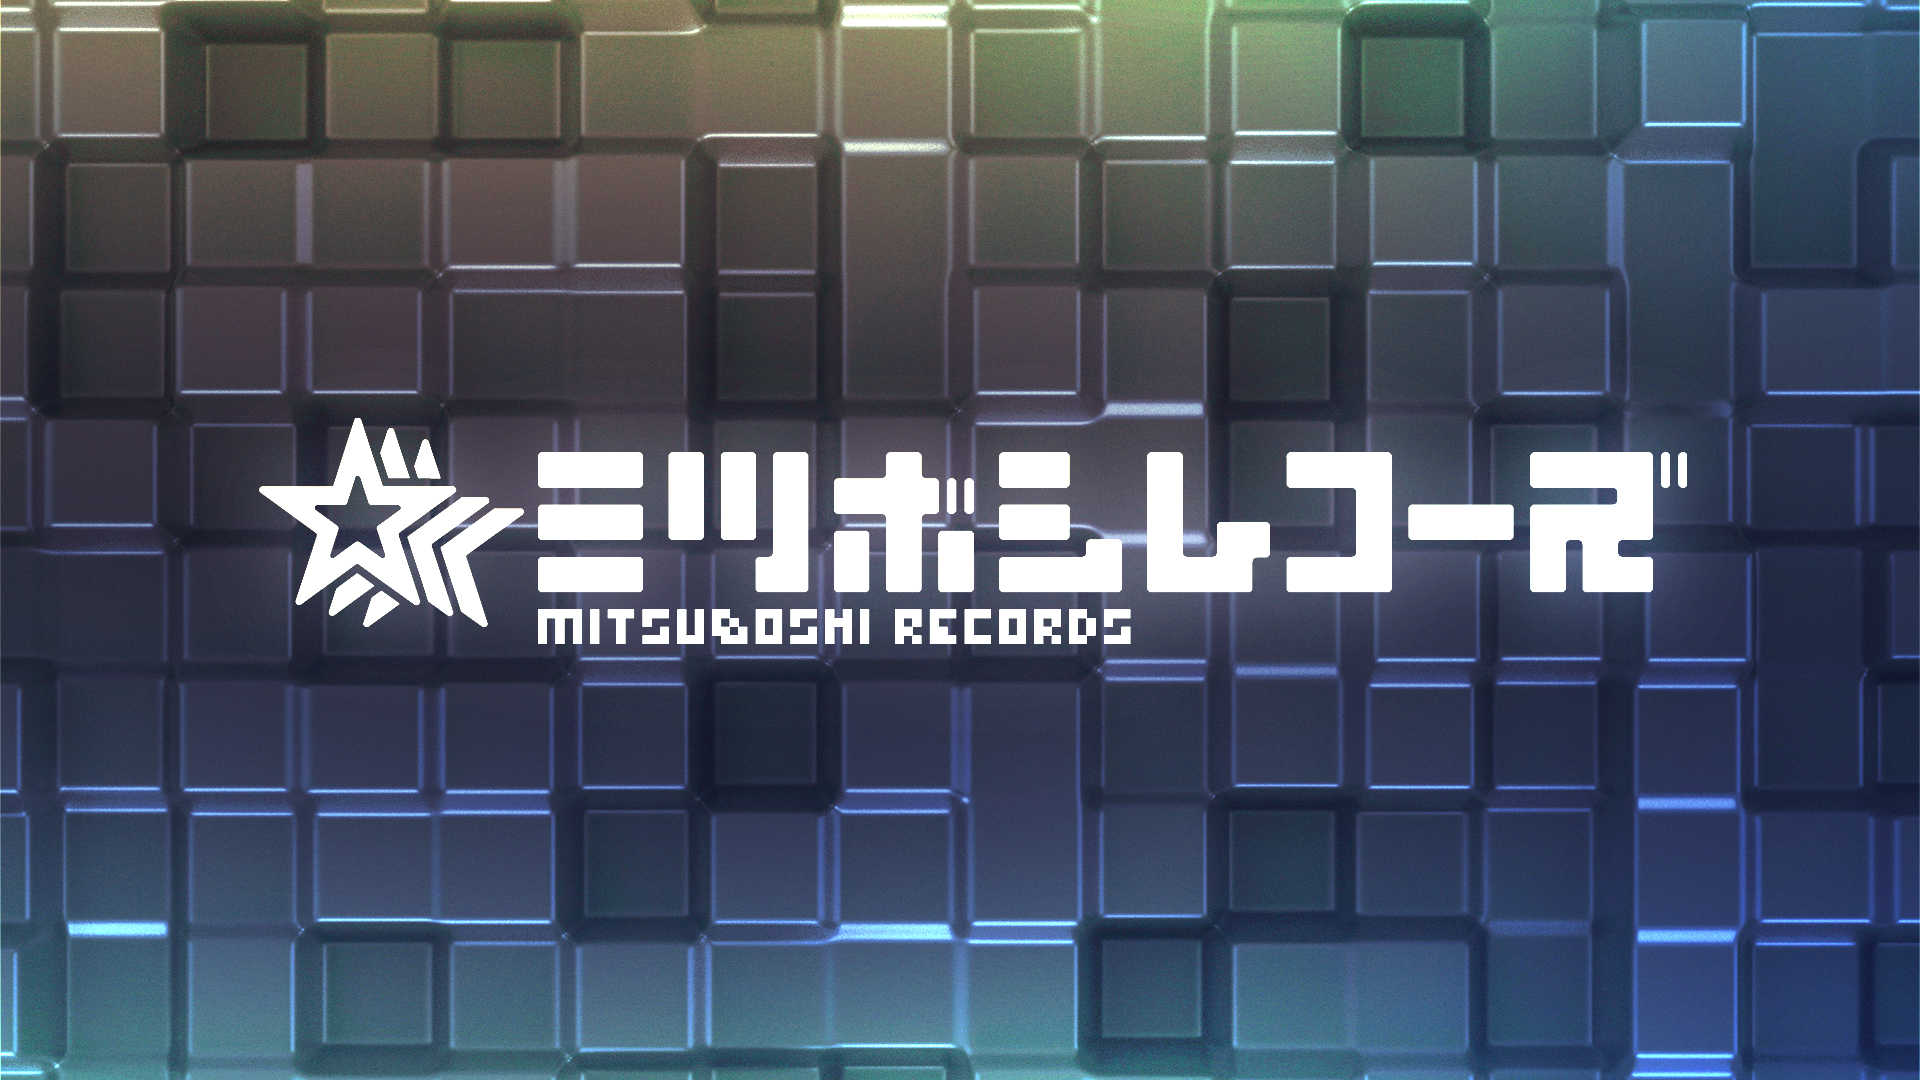 Mitsuboshi Records